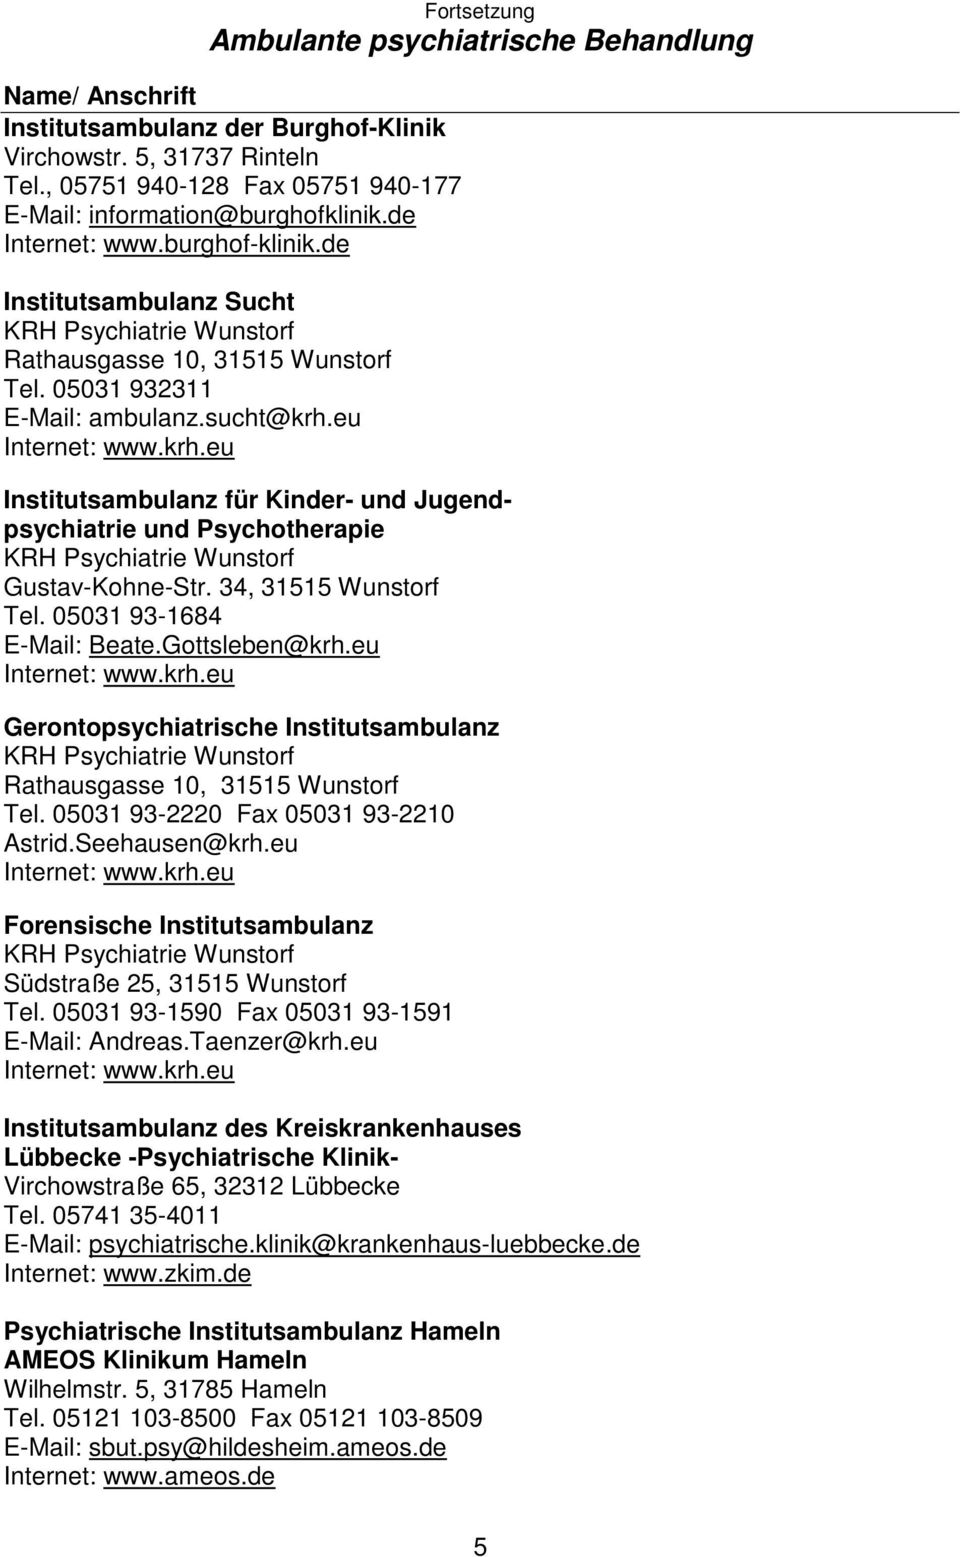 sucht@krh.eu Institutsambulanz für Kinder- und Jugendpsychiatrie und Psychotherapie Gustav-Kohne-Str. 34, 31515 Wunstorf Tel. 05031 93-1684 E-Mail: Beate.Gottsleben@krh.